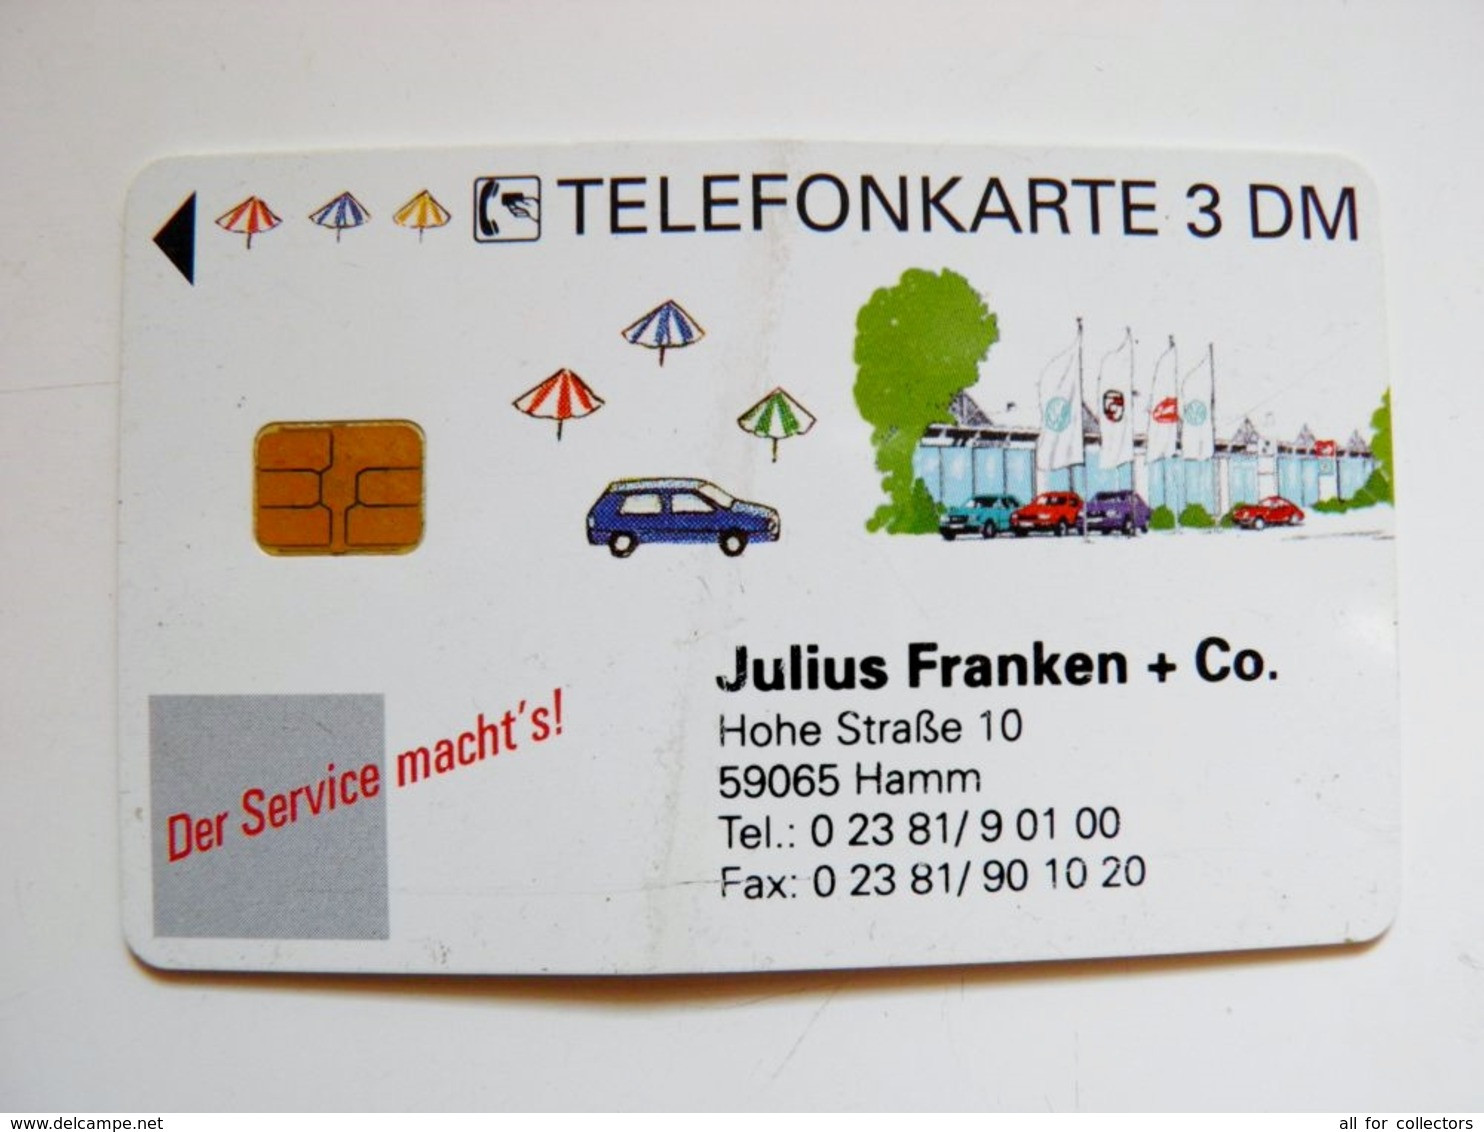 Chip Phonecard Germany 3DM O 537 04,95 33,000 Bent - O-Series: Kundenserie Vom Sammlerservice Ausgeschlossen